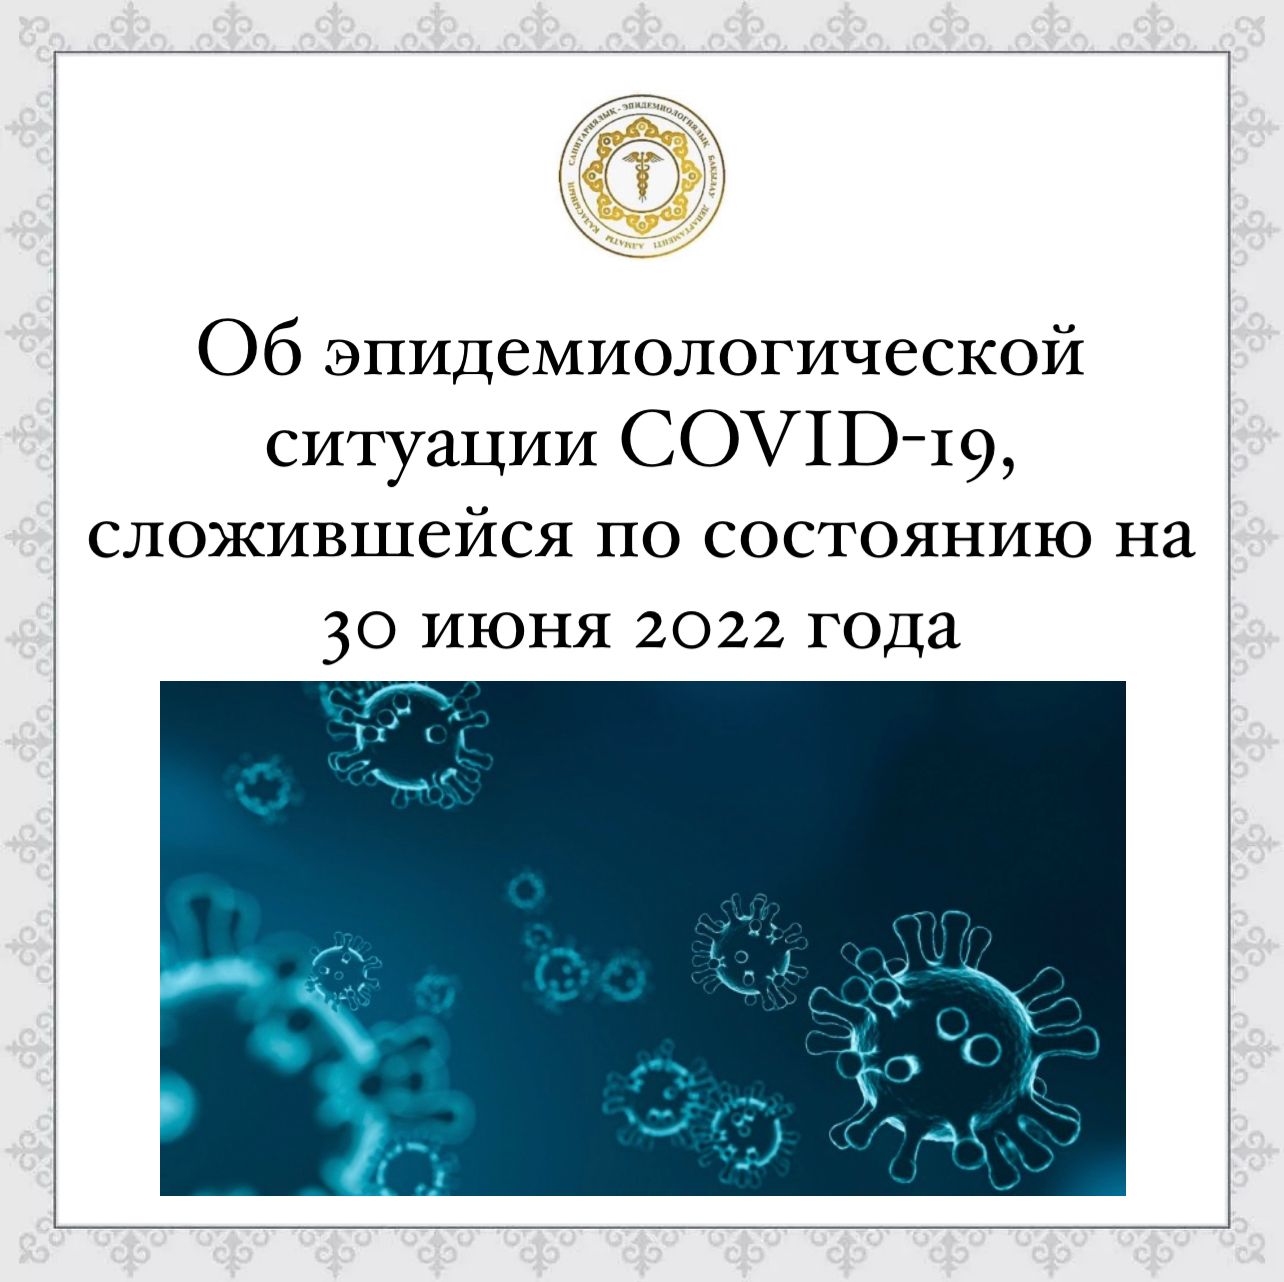 Об эпидемиологической ситуации COVID-19, сложившейся по состоянию на 30 июня 2022 года